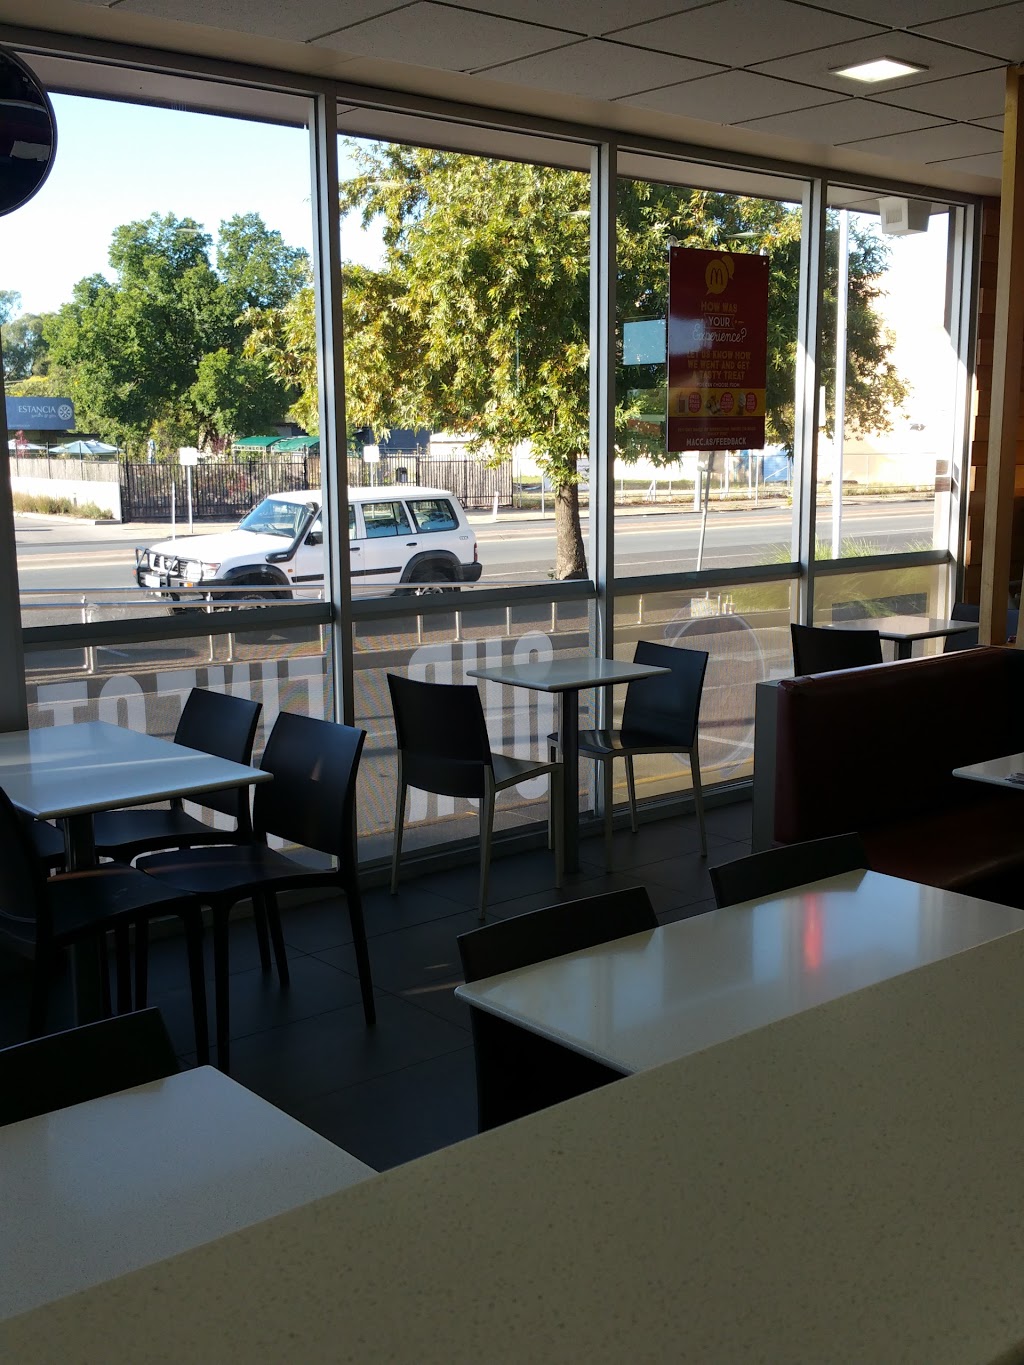 McDonalds Benalla | meal takeaway | 127/129 Bridge St E, Benalla VIC 3672, Australia | 0357623605 OR +61 3 5762 3605